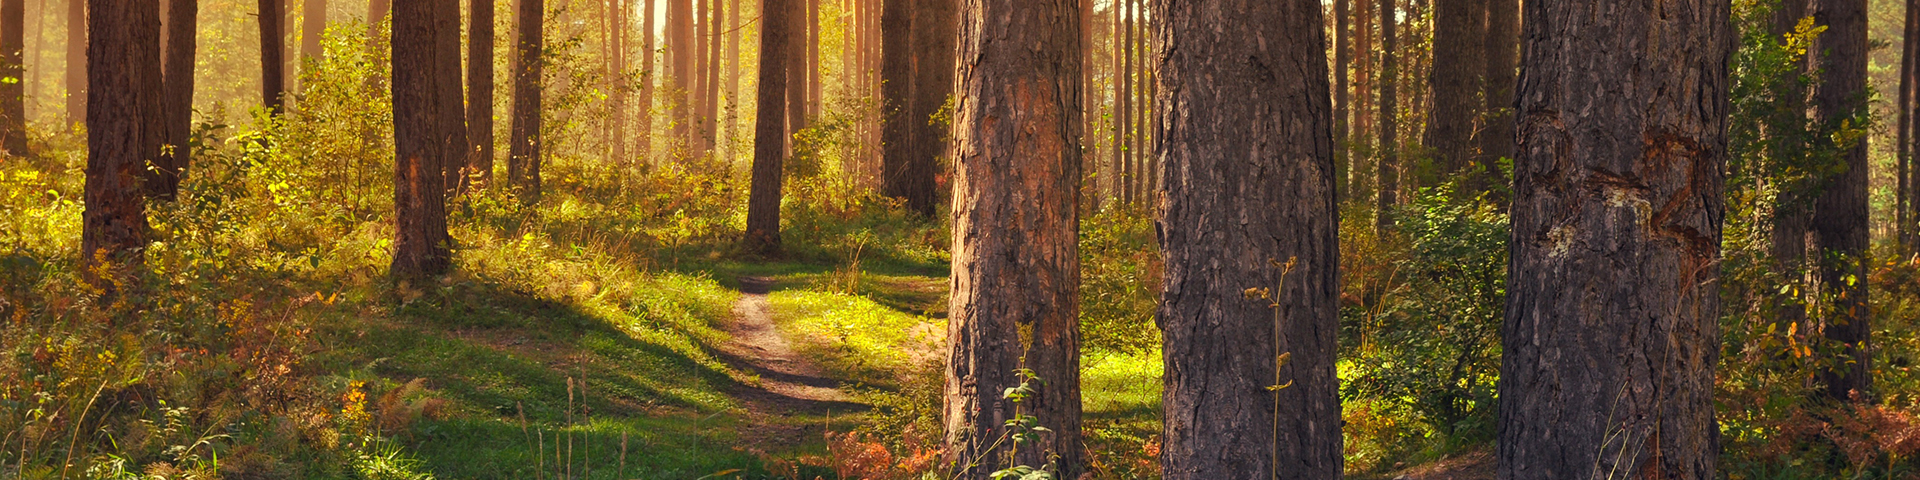 stig bredvid träd i en skog bannerbild